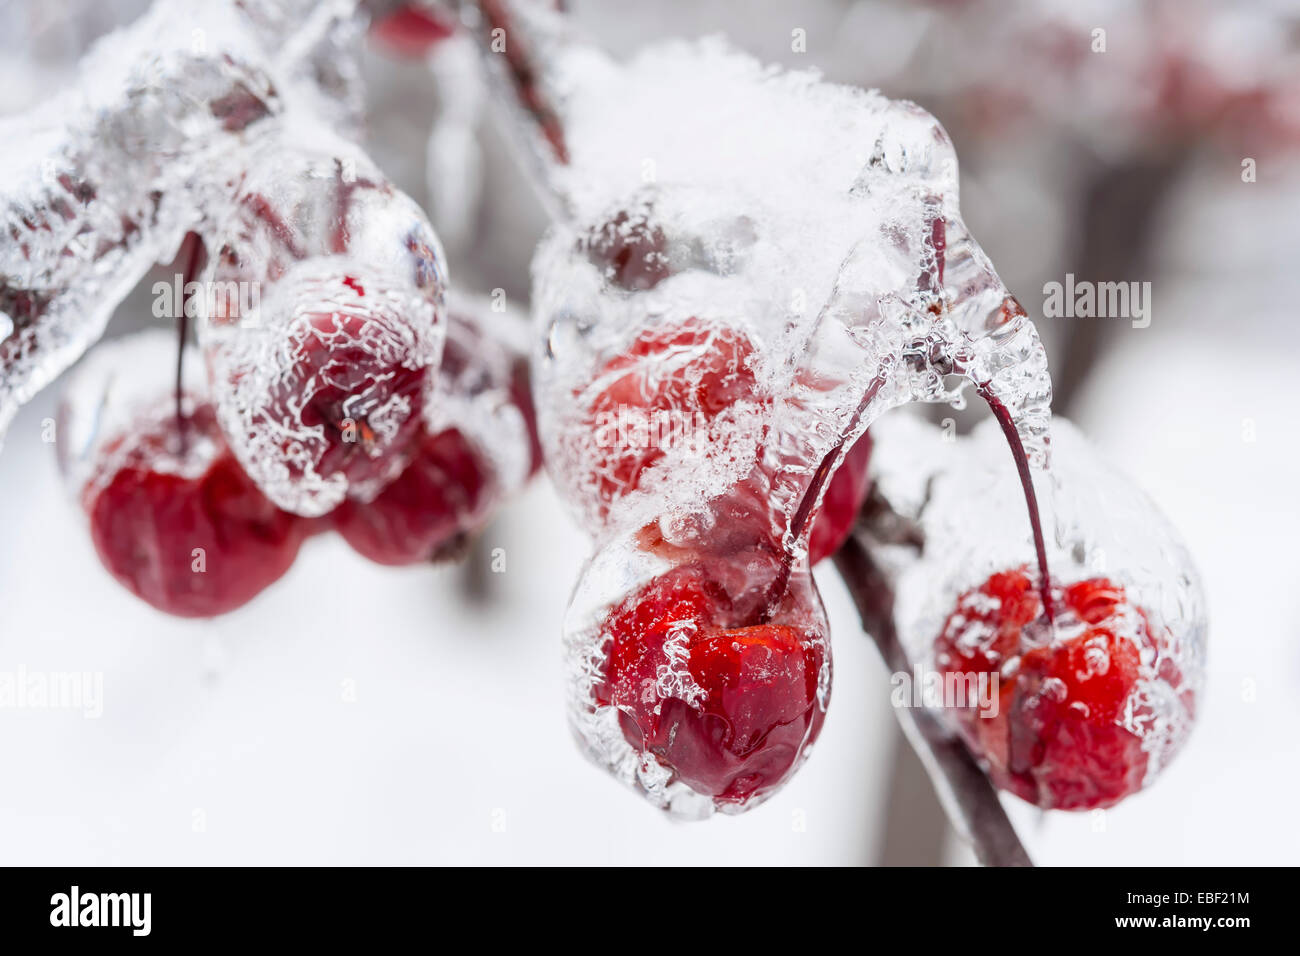 Mazzetto di granchio rosso mele congelate e ricoperta di ghiaccio sul ramo innevati in inverno, close up Foto Stock